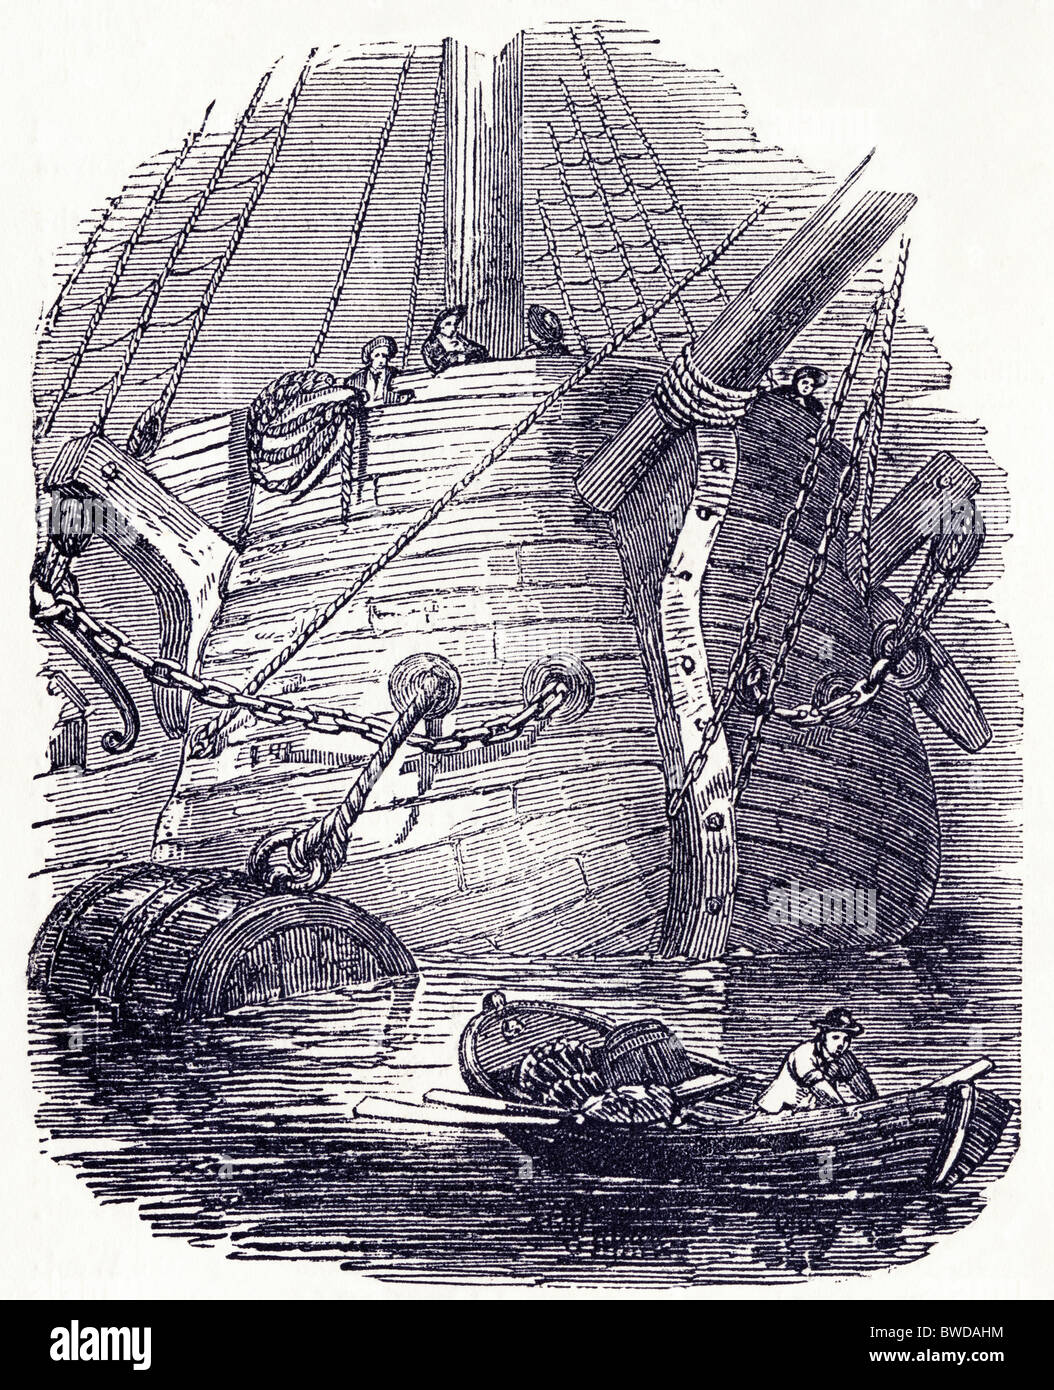 La gravure de l'époque victorienne du 'North Star' utilisés pour la recherche de l'expédition arctique perdu de Sir John Franklin, circa 1849 Banque D'Images